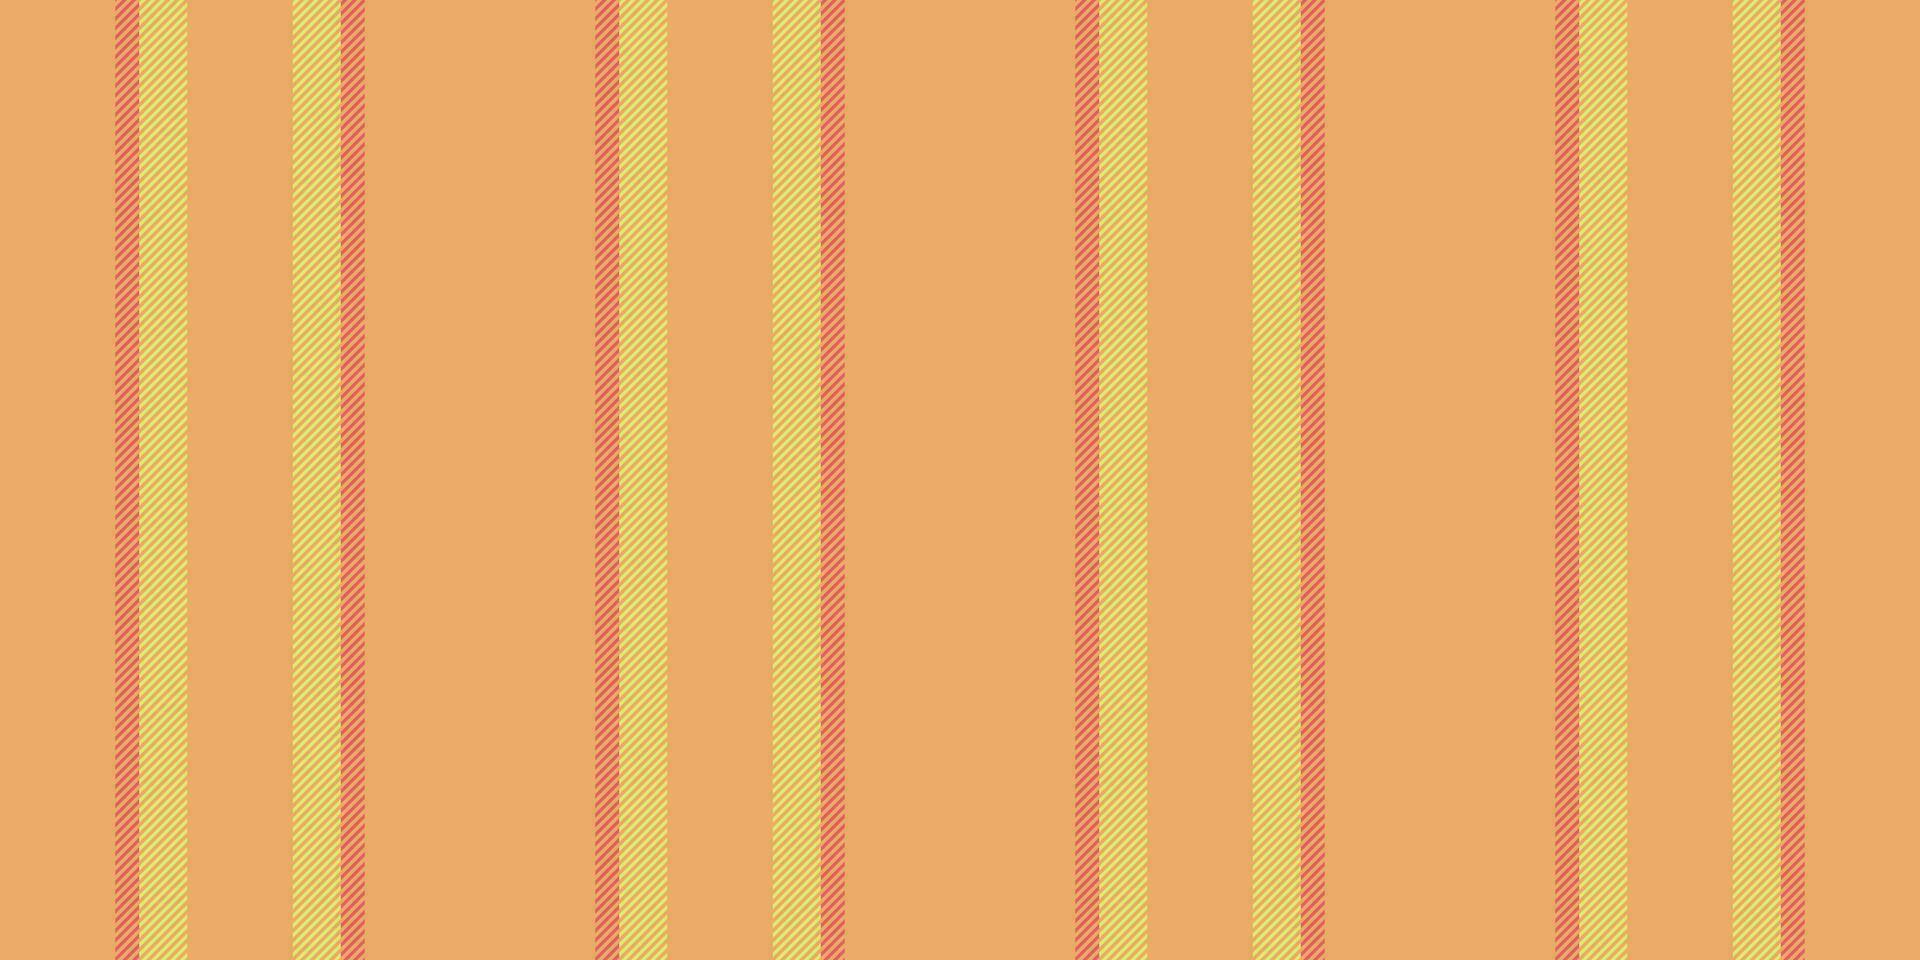 conteúdo linhas desatado padrão, roupas vertical fundo textura. deserto vetor tecido listra têxtil dentro laranja e Lima cores.